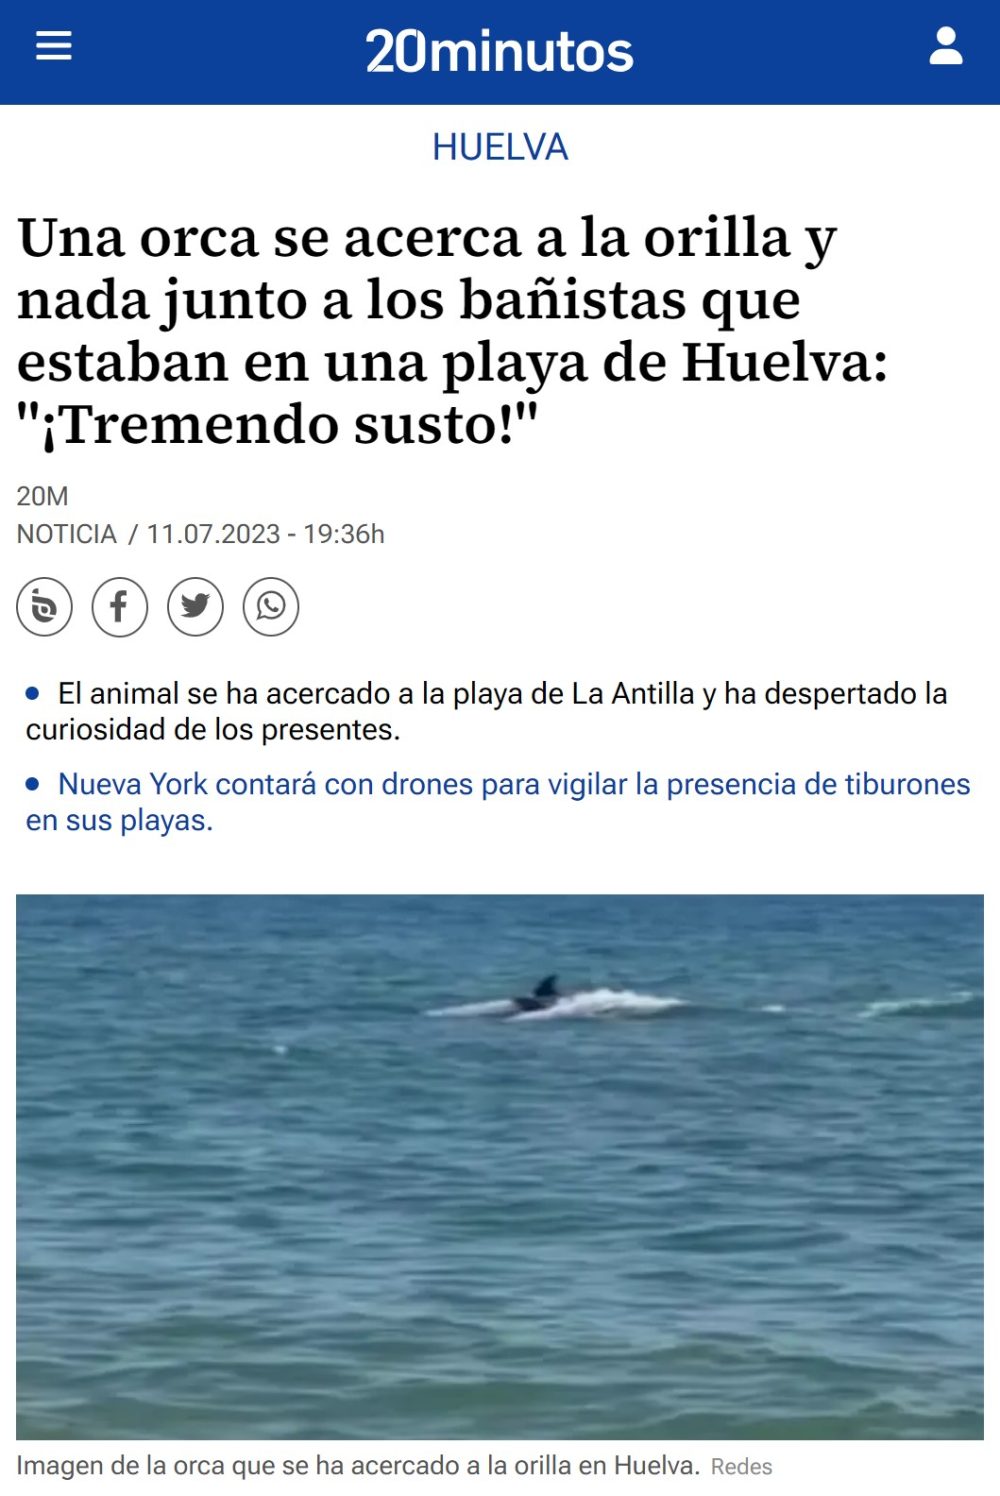 Una orca nadando entre los bañistas de una playa de Huelva